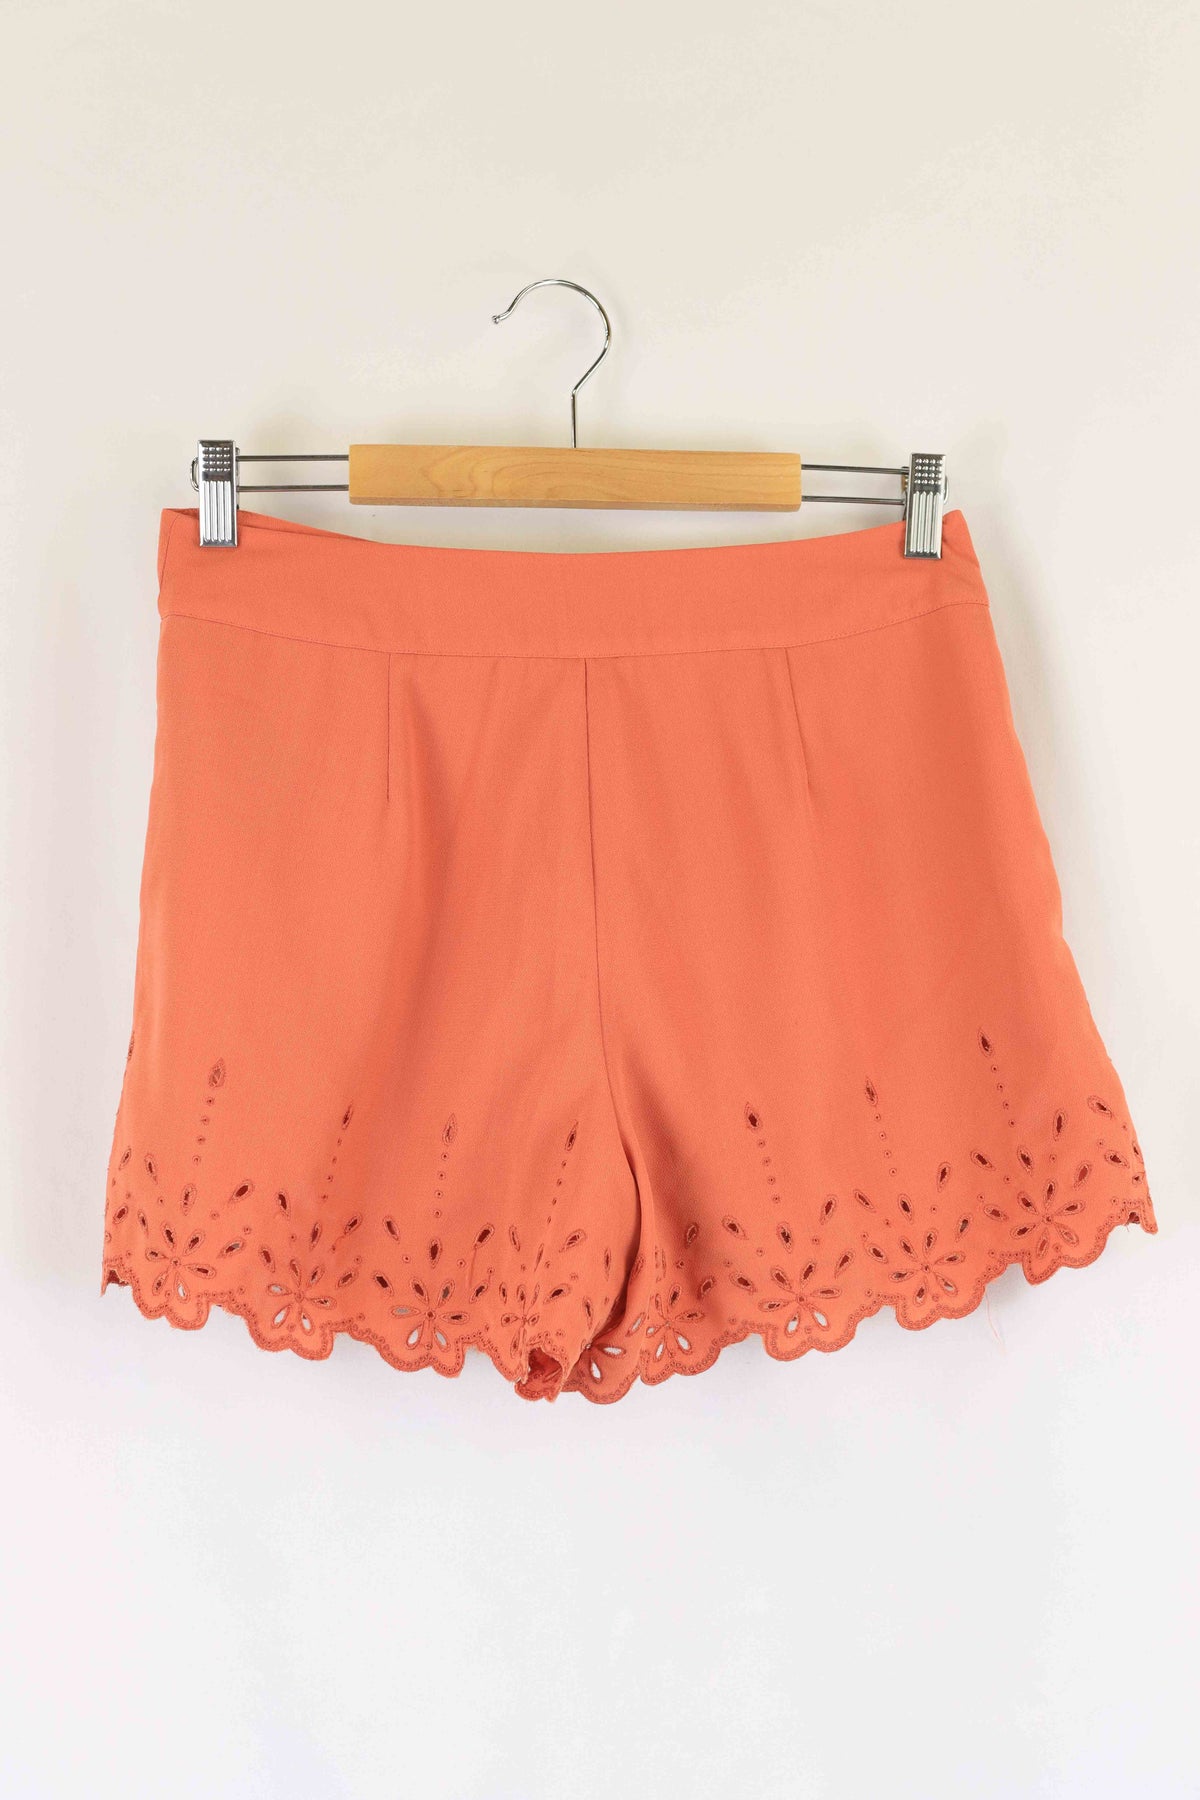 Topshop Coral Pink Shorts 10